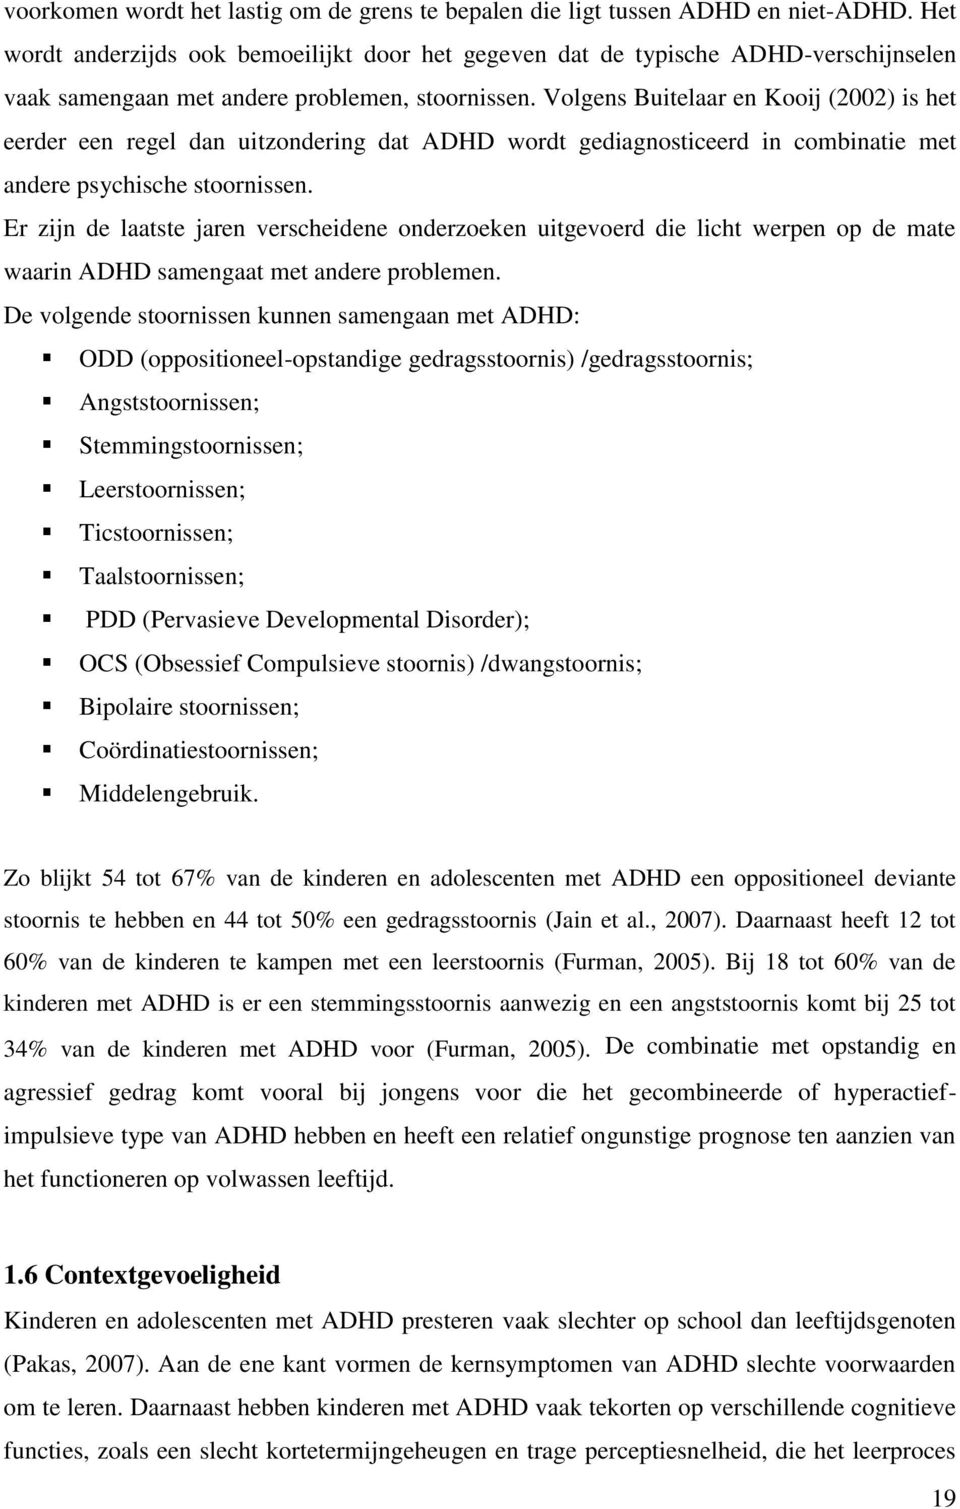 Volgens Buitelaar en Kooij (2002) is het eerder een regel dan uitzondering dat ADHD wordt gediagnosticeerd in combinatie met andere psychische stoornissen.